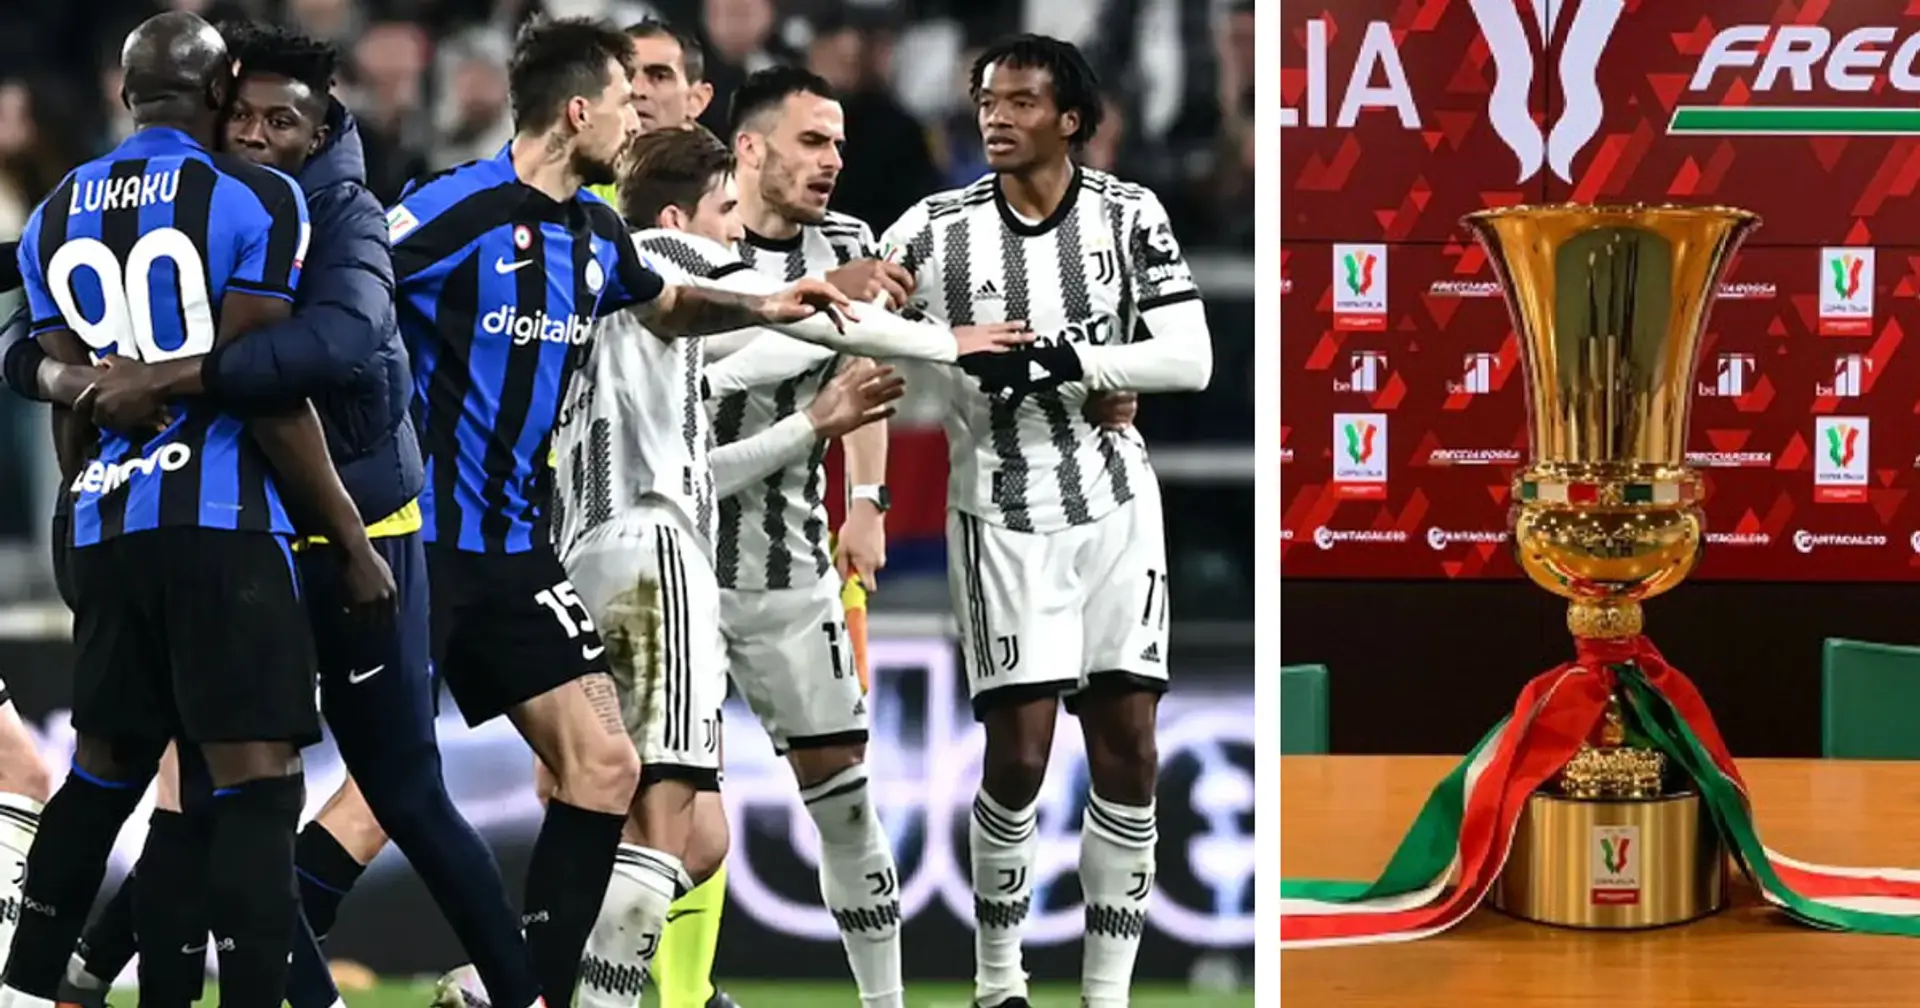 Maxi-squalifica per Cuadrado: la decisione del Giudice sportivo per i fatti di Juventus-Inter